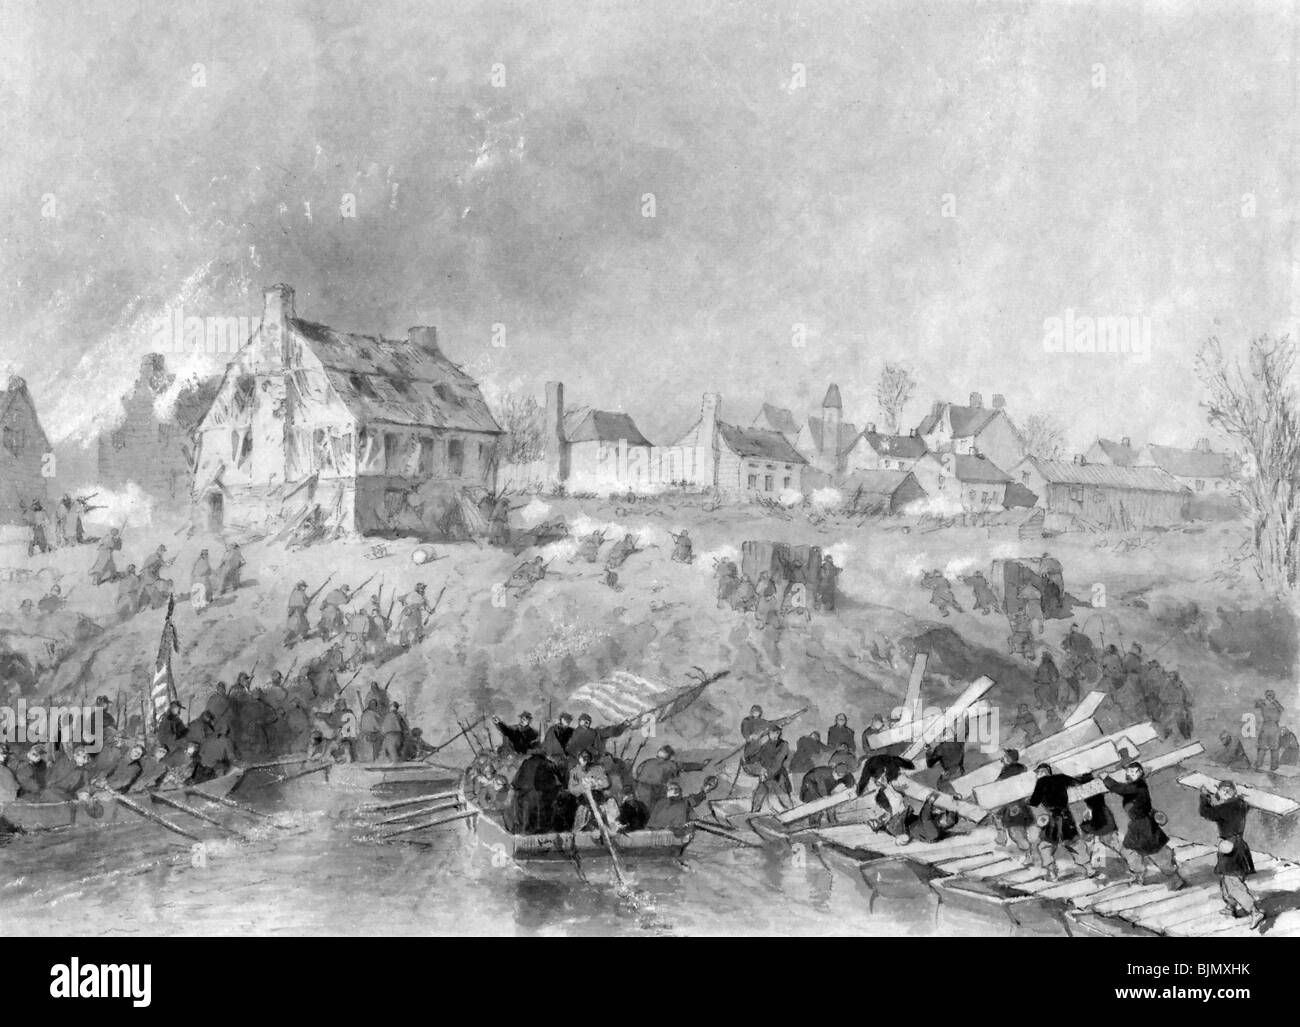 Attaque sur les troupes de l'Union de Fredericksburg atterrissage sur rive du fleuve durant la guerre civile aux États-Unis, 1862 Banque D'Images